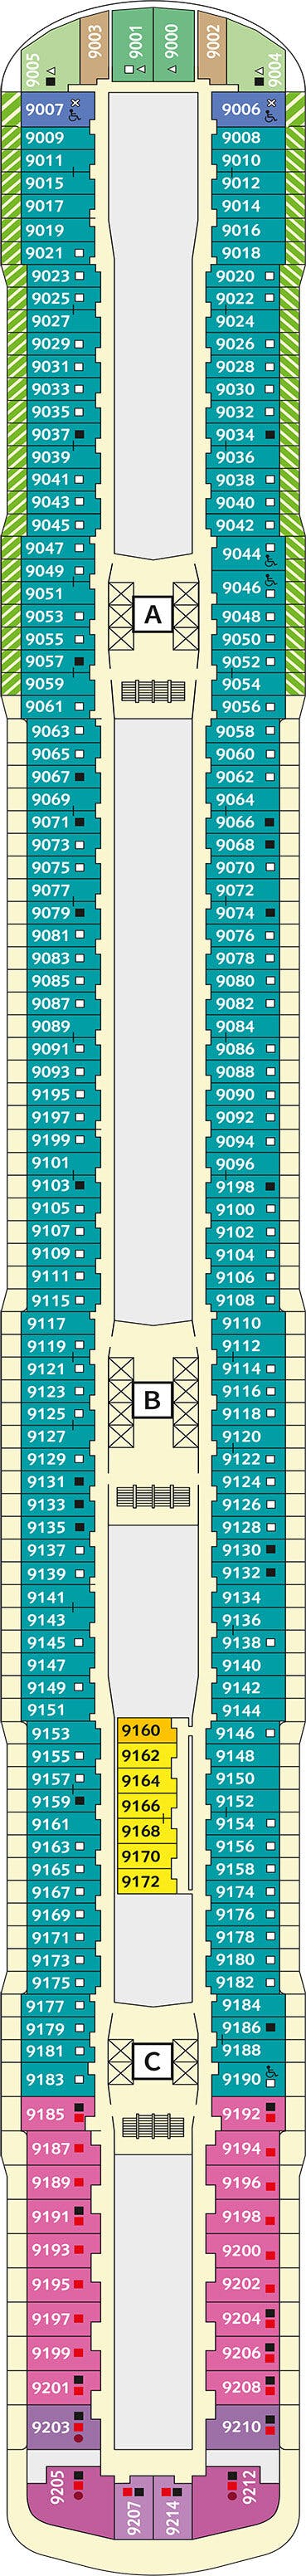 Mein Schiff Relax - TUI Cruises - Deck 9 (Deck 9)